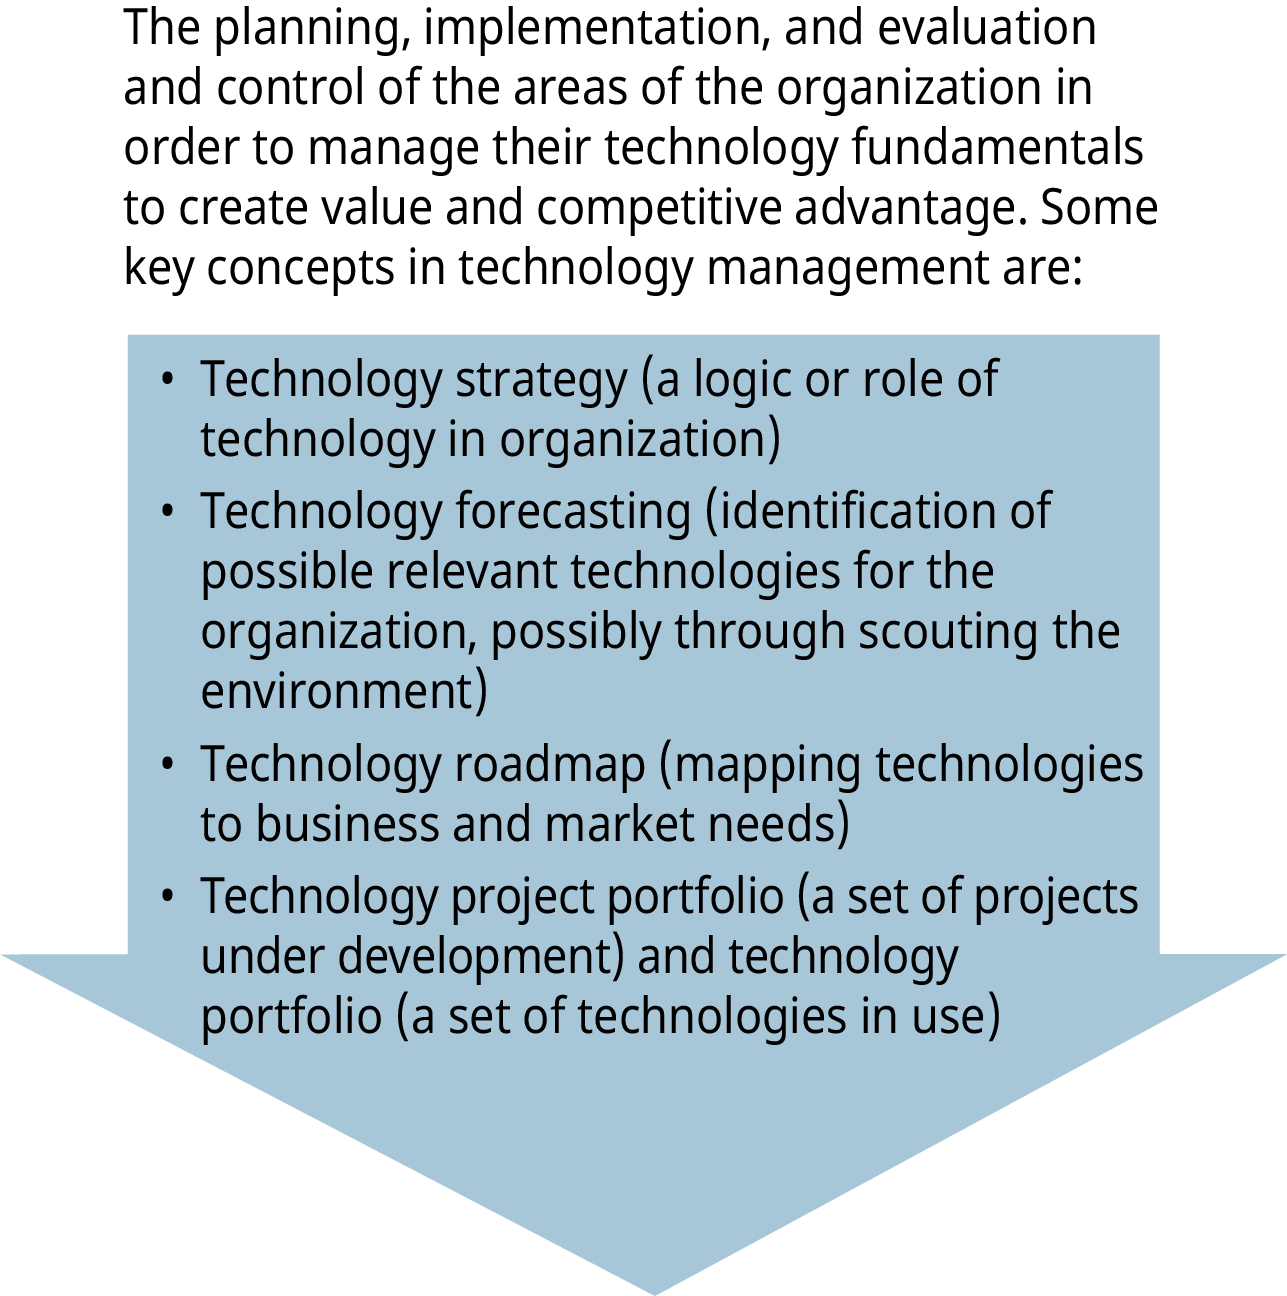 Un diagramme illustre le concept de gestion de la technologie, les quatre concepts clés étant répertoriés sur une flèche vers le bas.